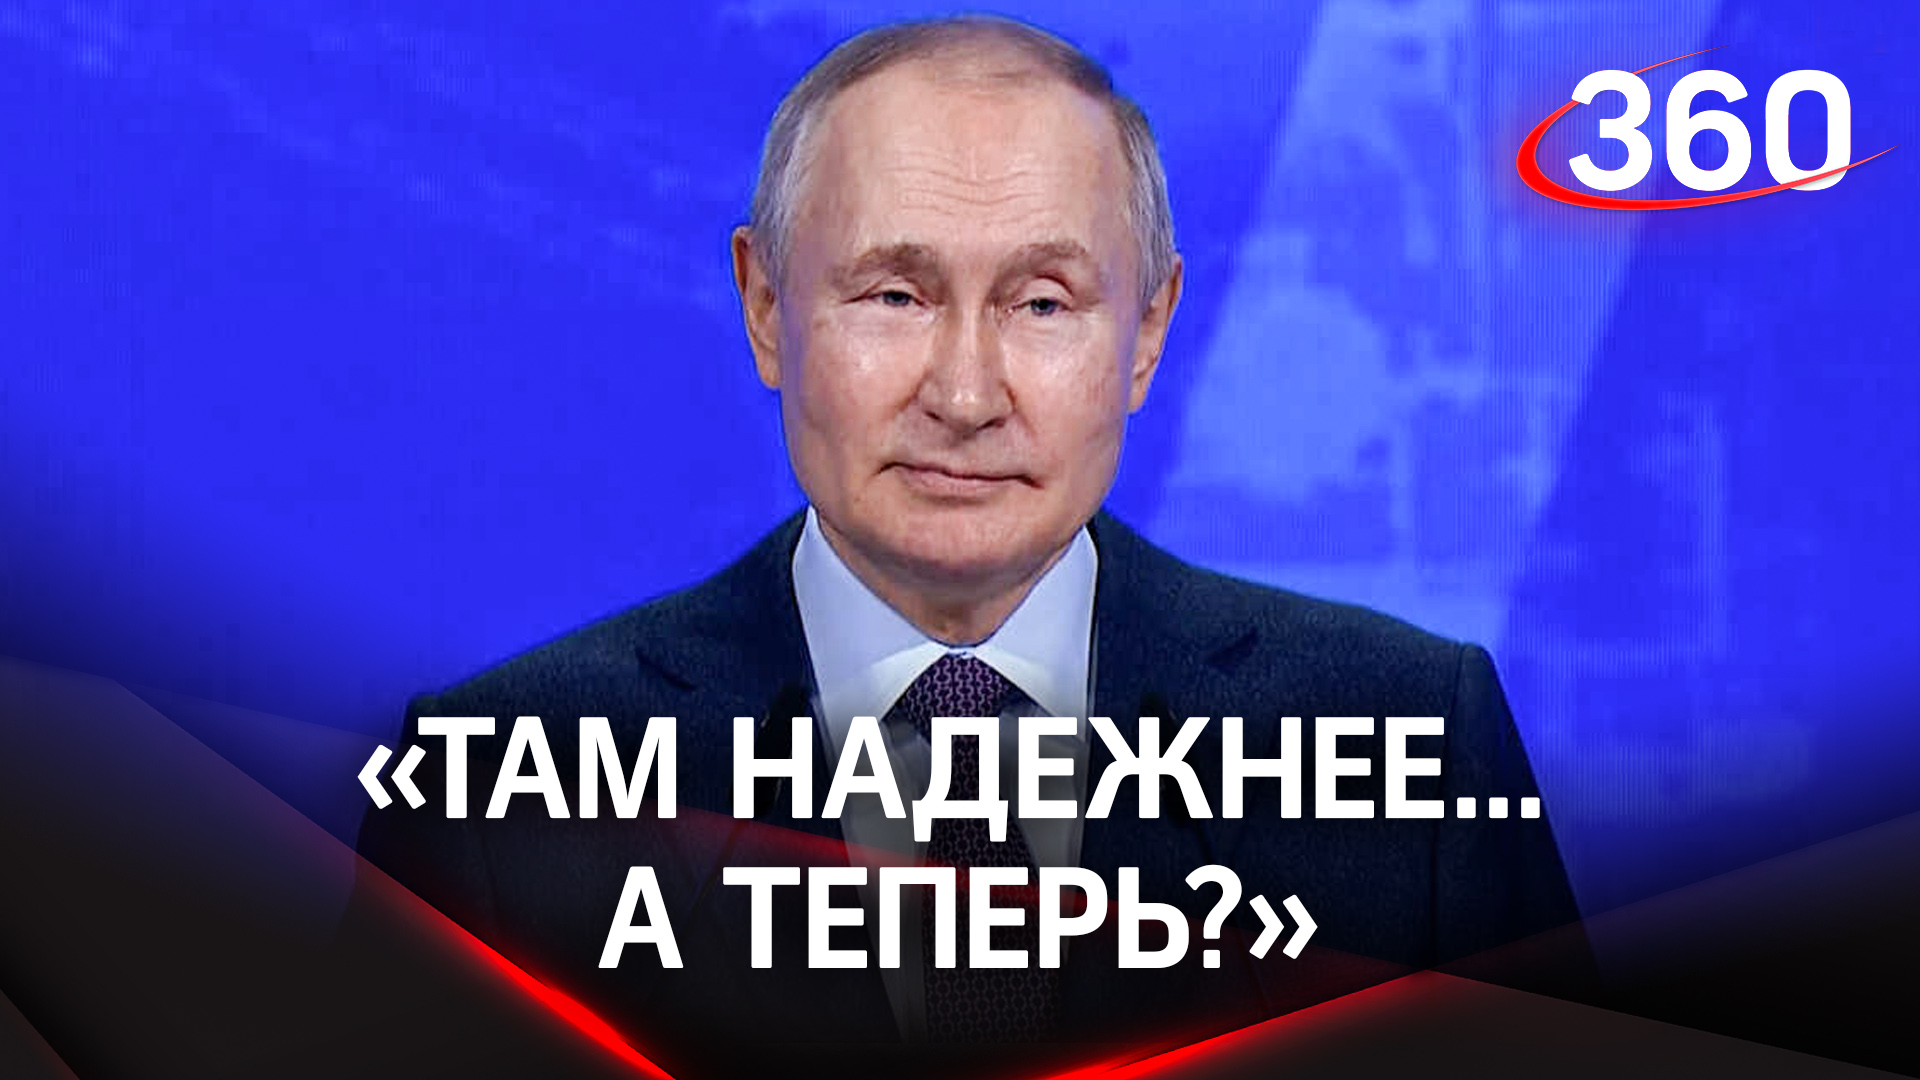 «Там надежнее... А теперь?»: Путин задал вопрос предпринимателям, владеющим бизнесом за рубежом